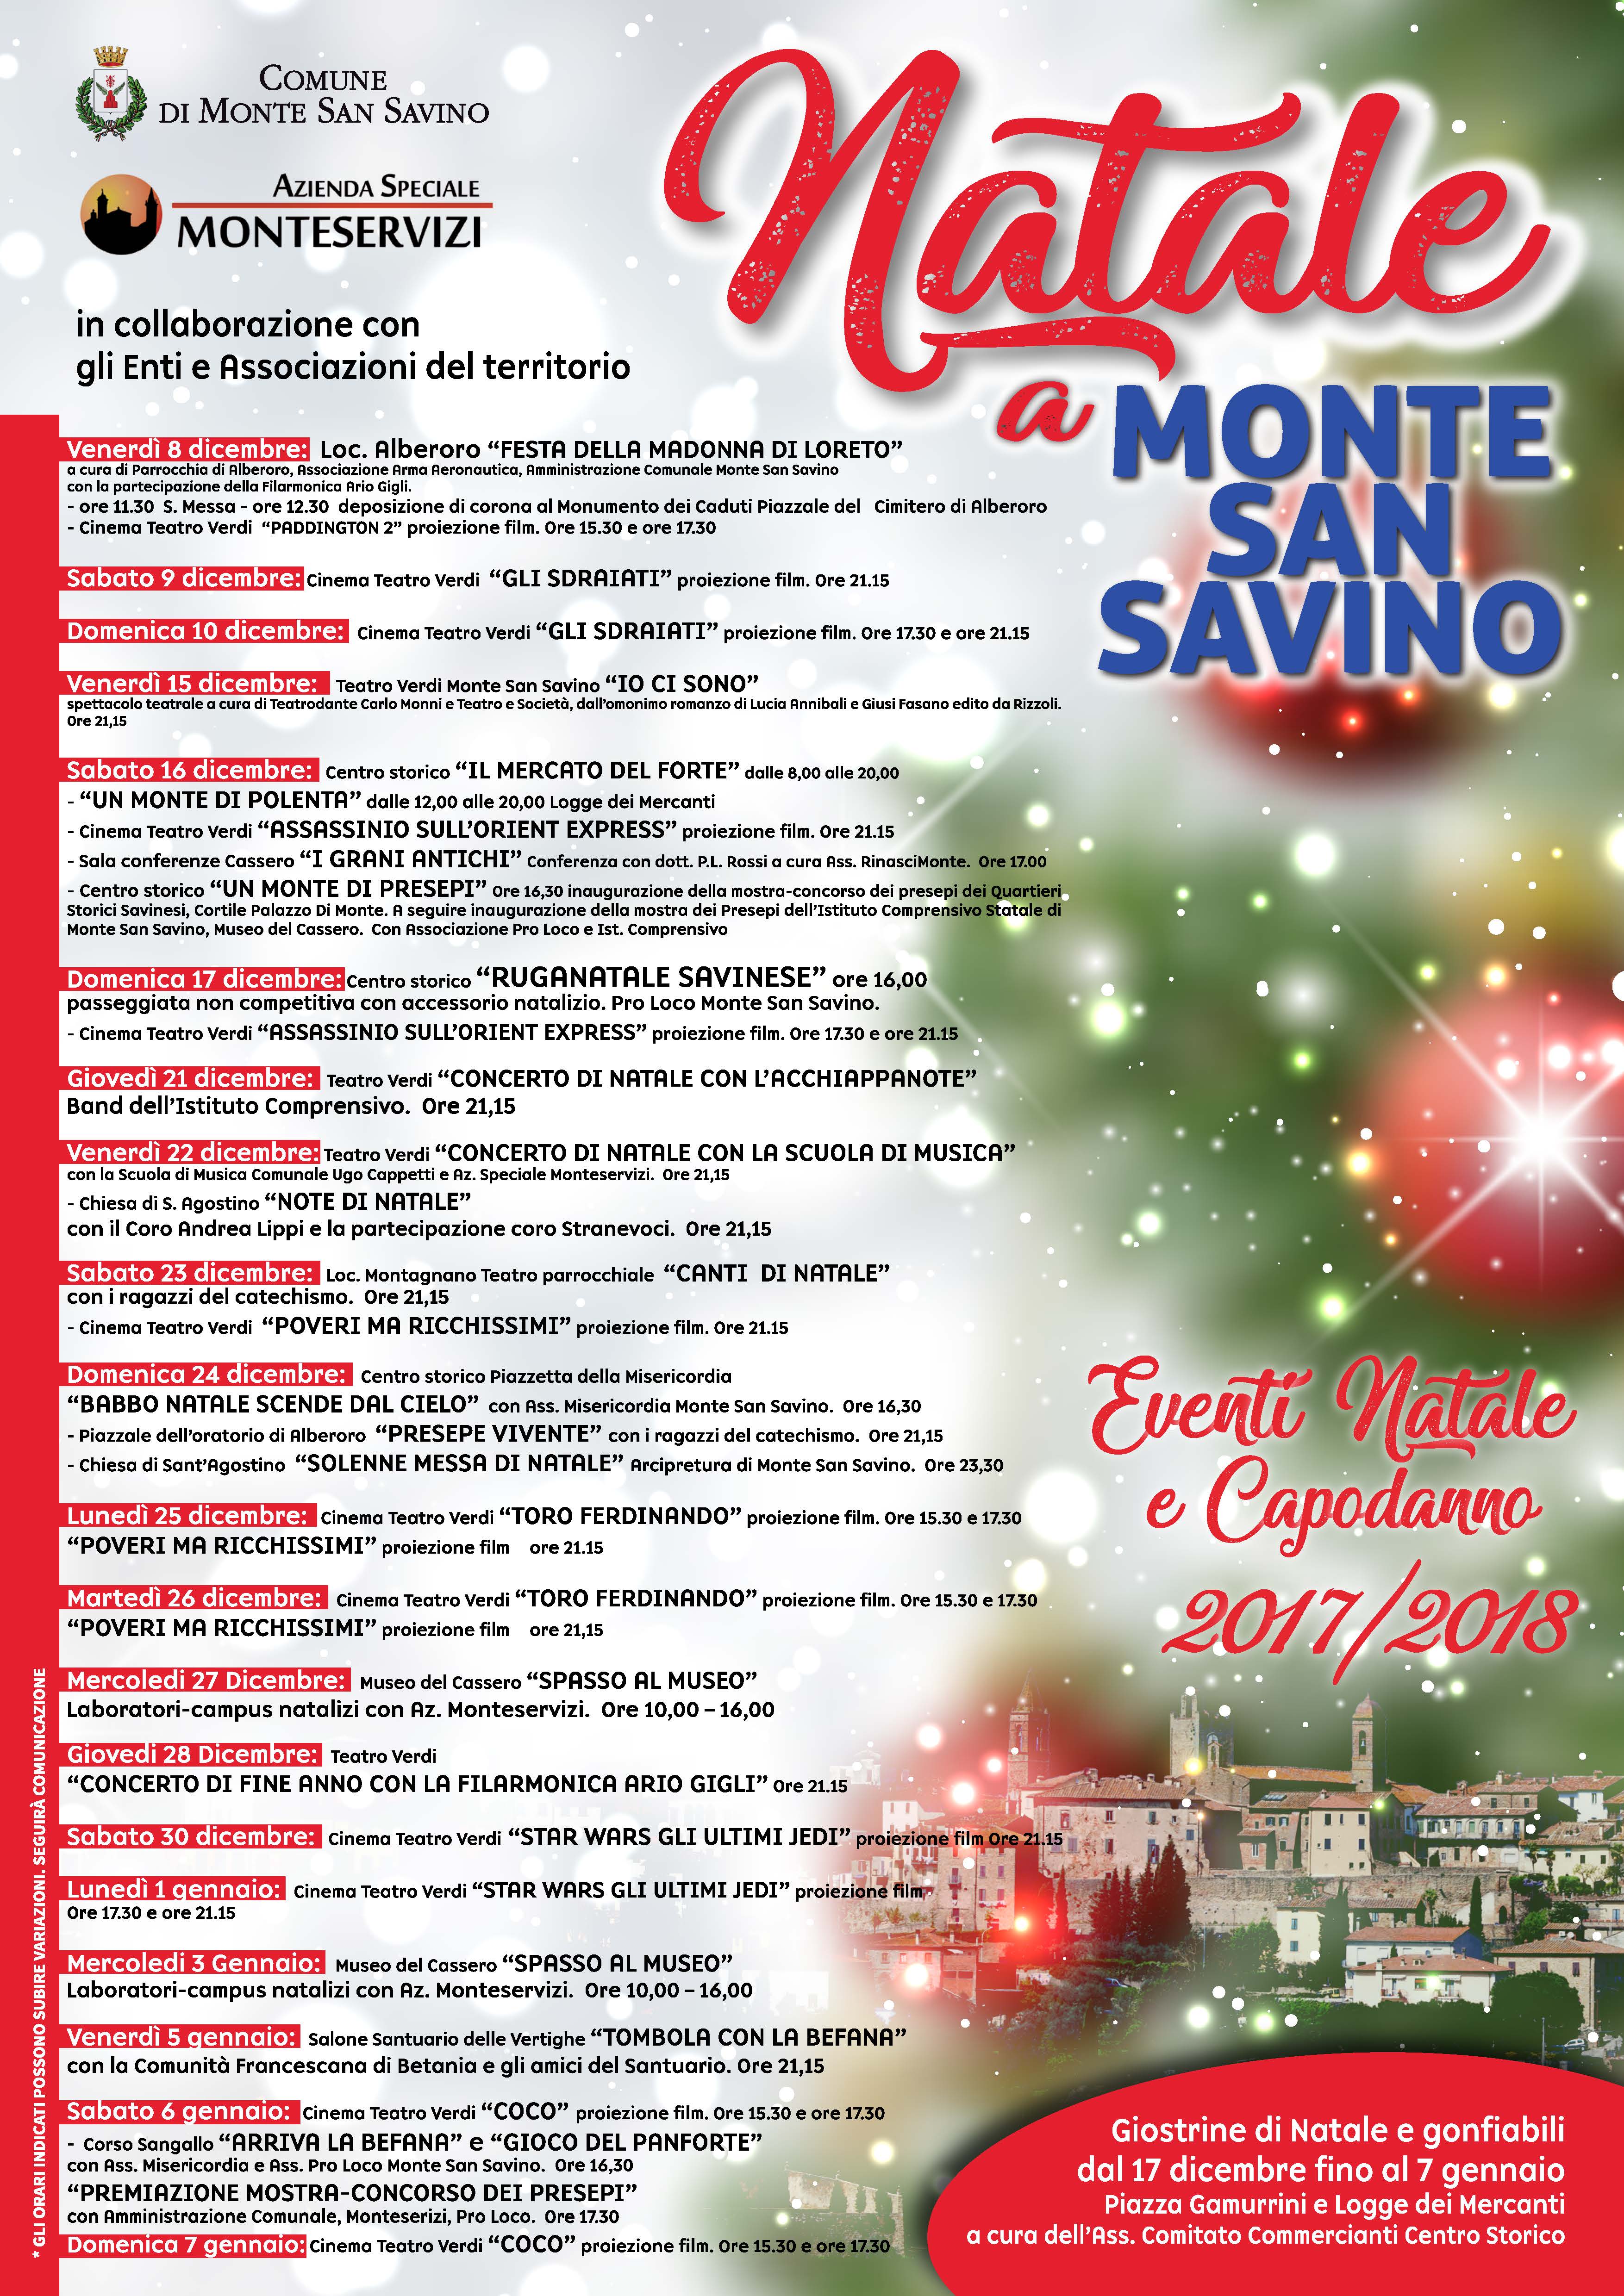 A Monte San Savino un weekend natalizio con tanti eventi: presepi, gastronomia e il Mercato del Forte